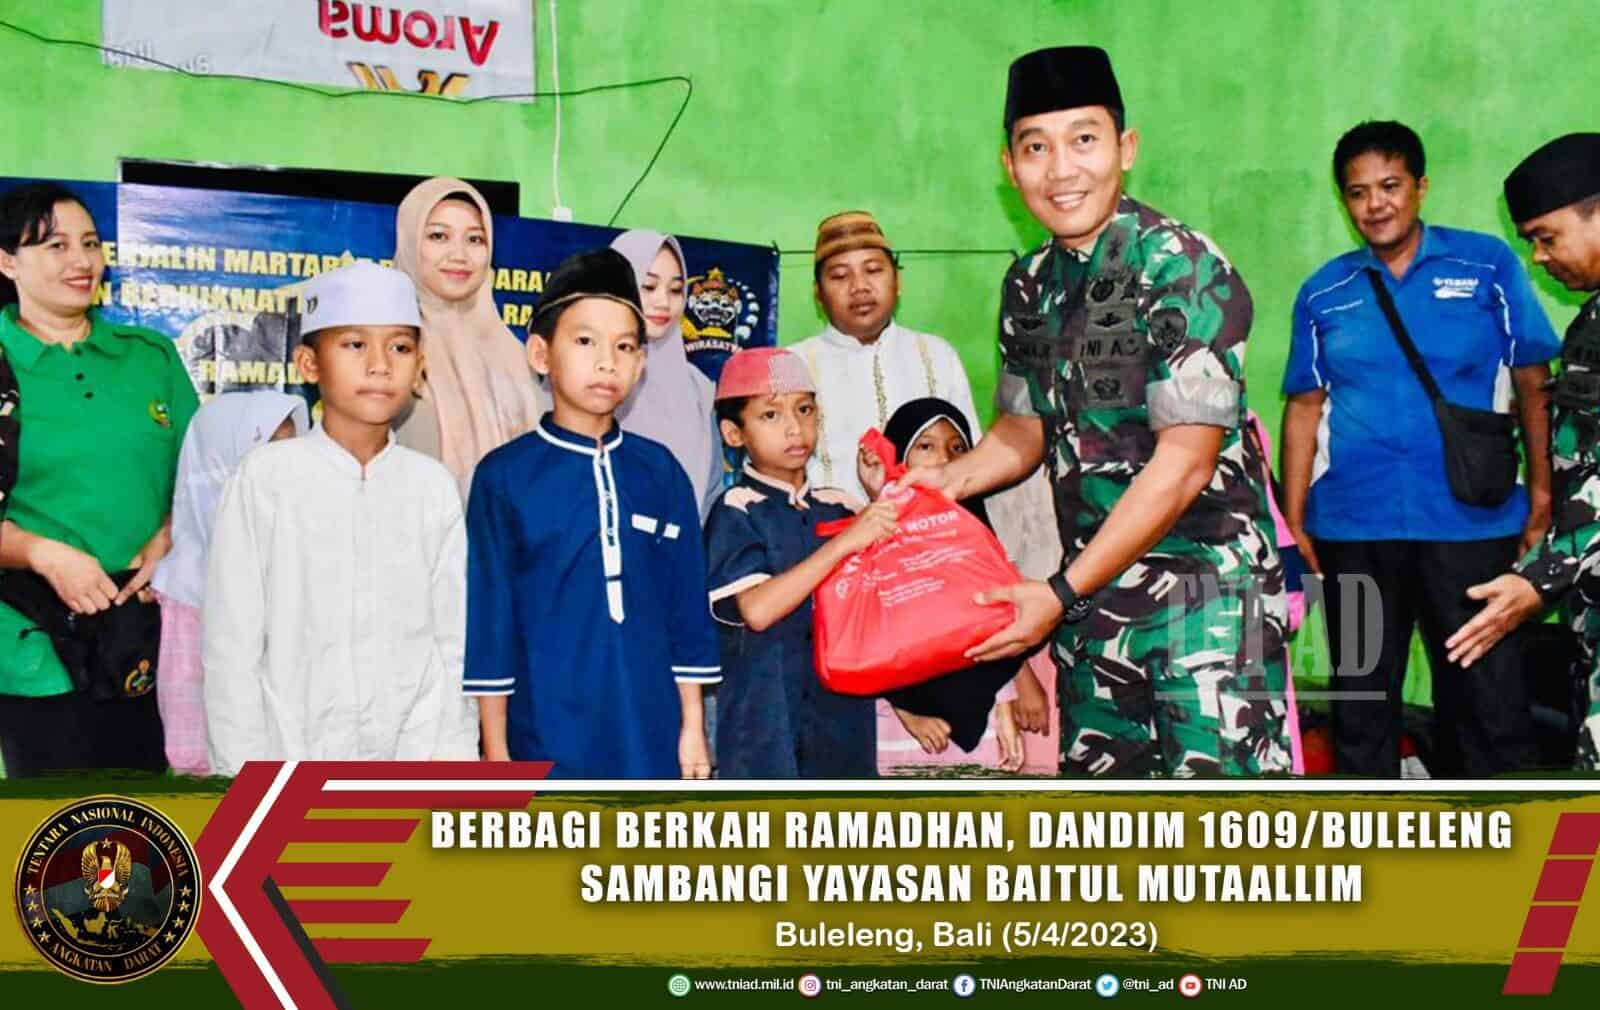 Berbagi Berkah Ramadhan, Dandim 1609/Buleleng Sambangi Yayasan Baitul Mutaallim